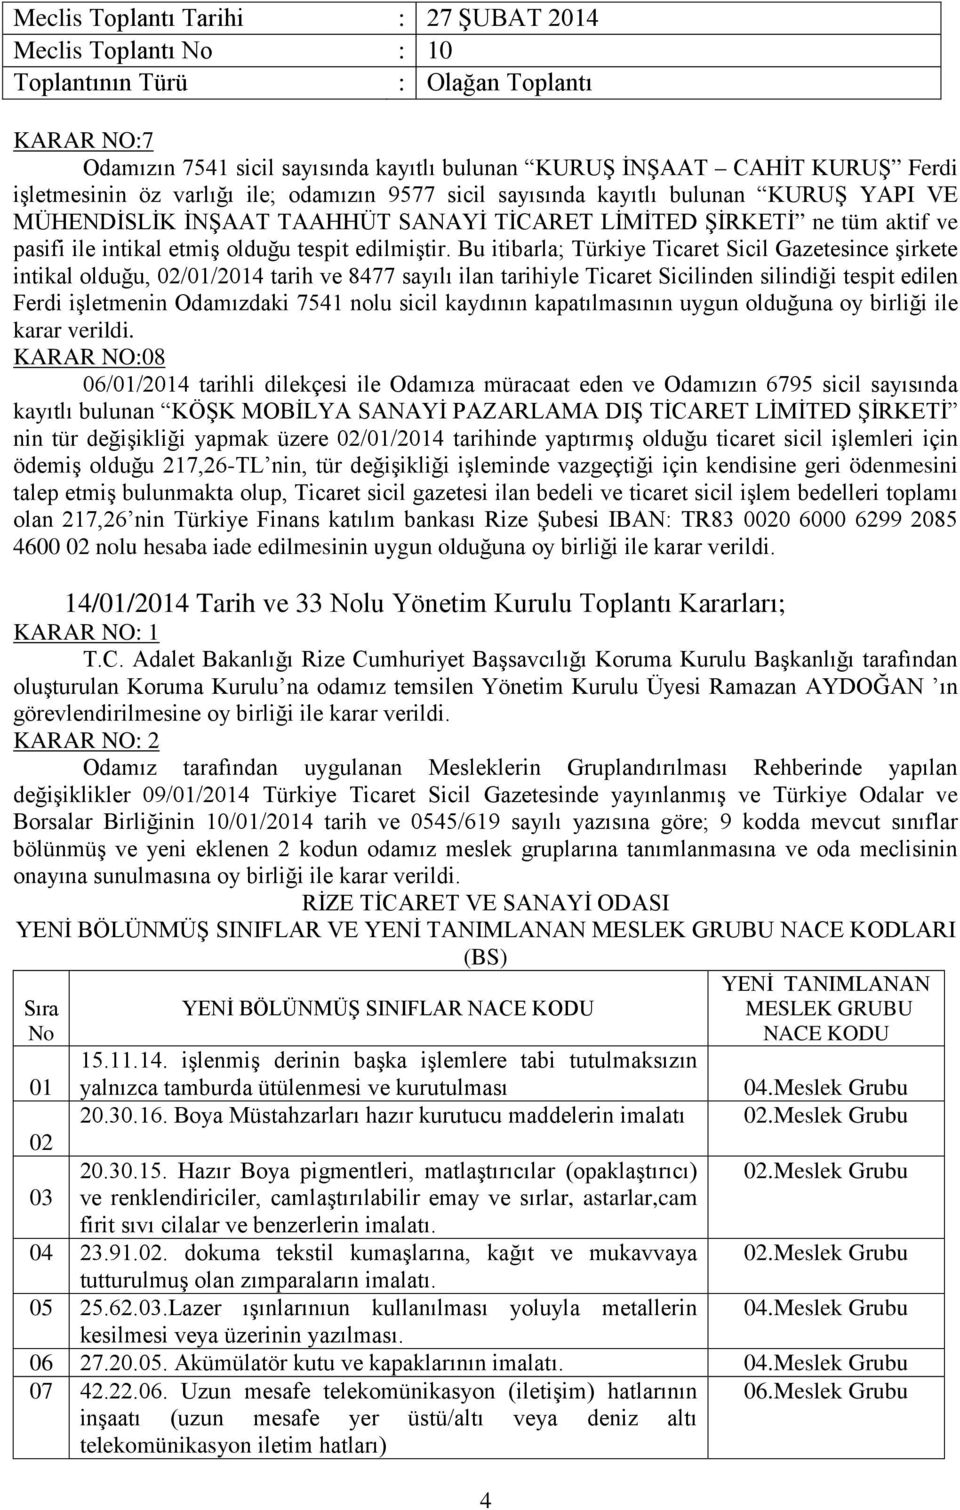 Bu itibarla; Türkiye Ticaret Sicil Gazetesince şirkete intikal olduğu, 02/01/2014 tarih ve 8477 sayılı ilan tarihiyle Ticaret Sicilinden silindiği tespit edilen Ferdi işletmenin Odamızdaki 7541 nolu